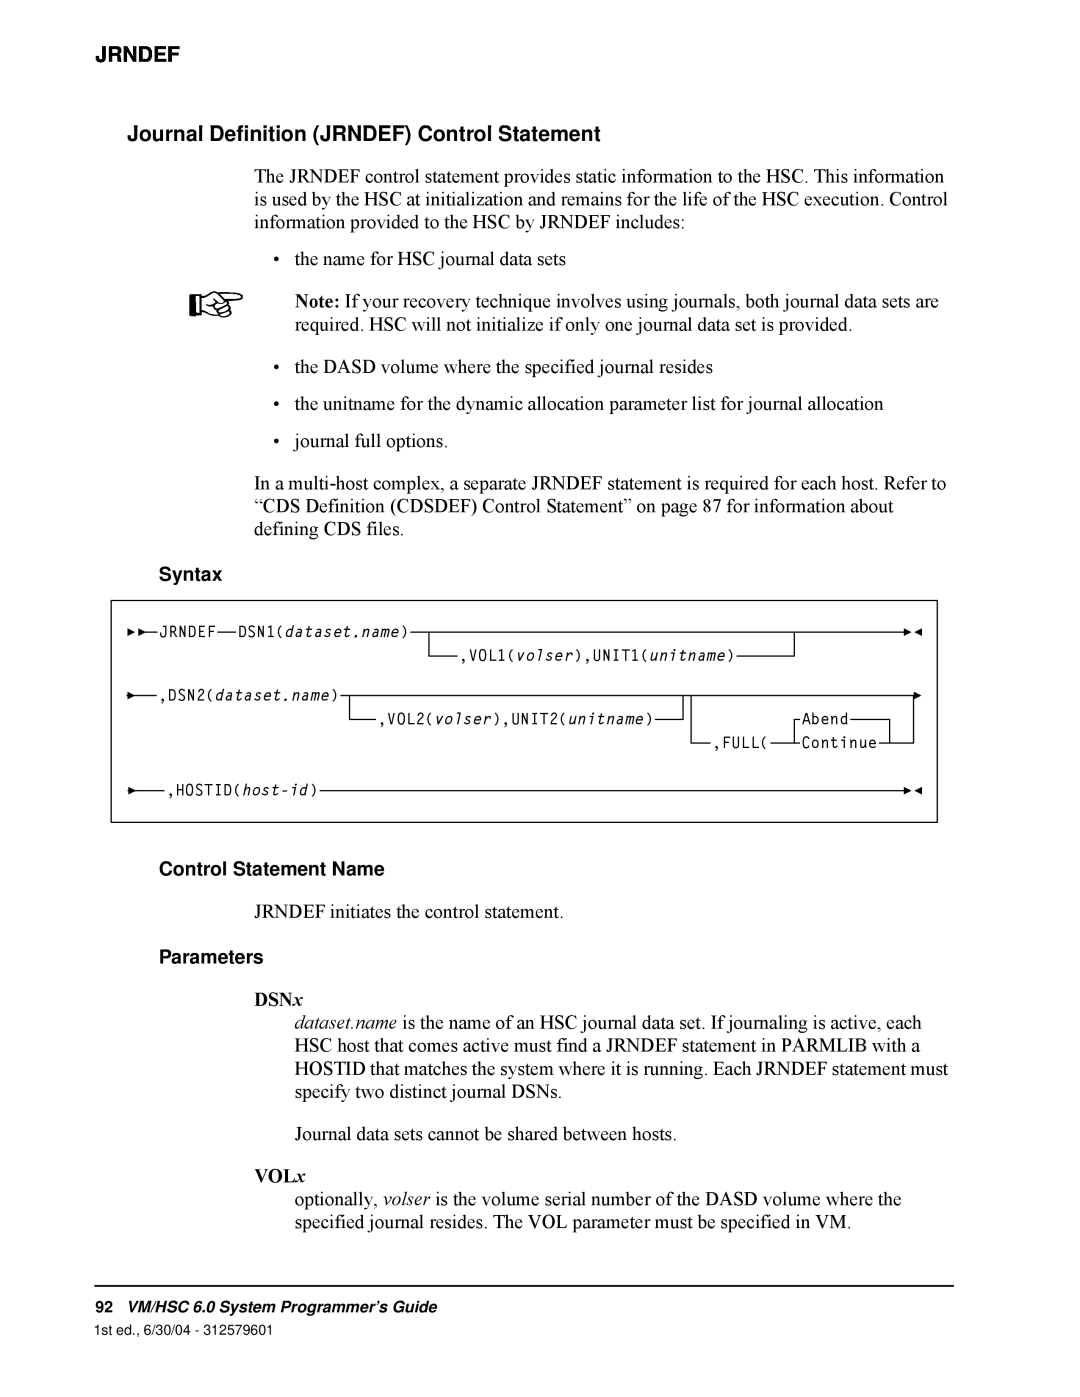 StorageTek 6 manual Jrndef, Journal Definition JRNDEF Control Statement, Syntax, Control Statement Name, Parameters 